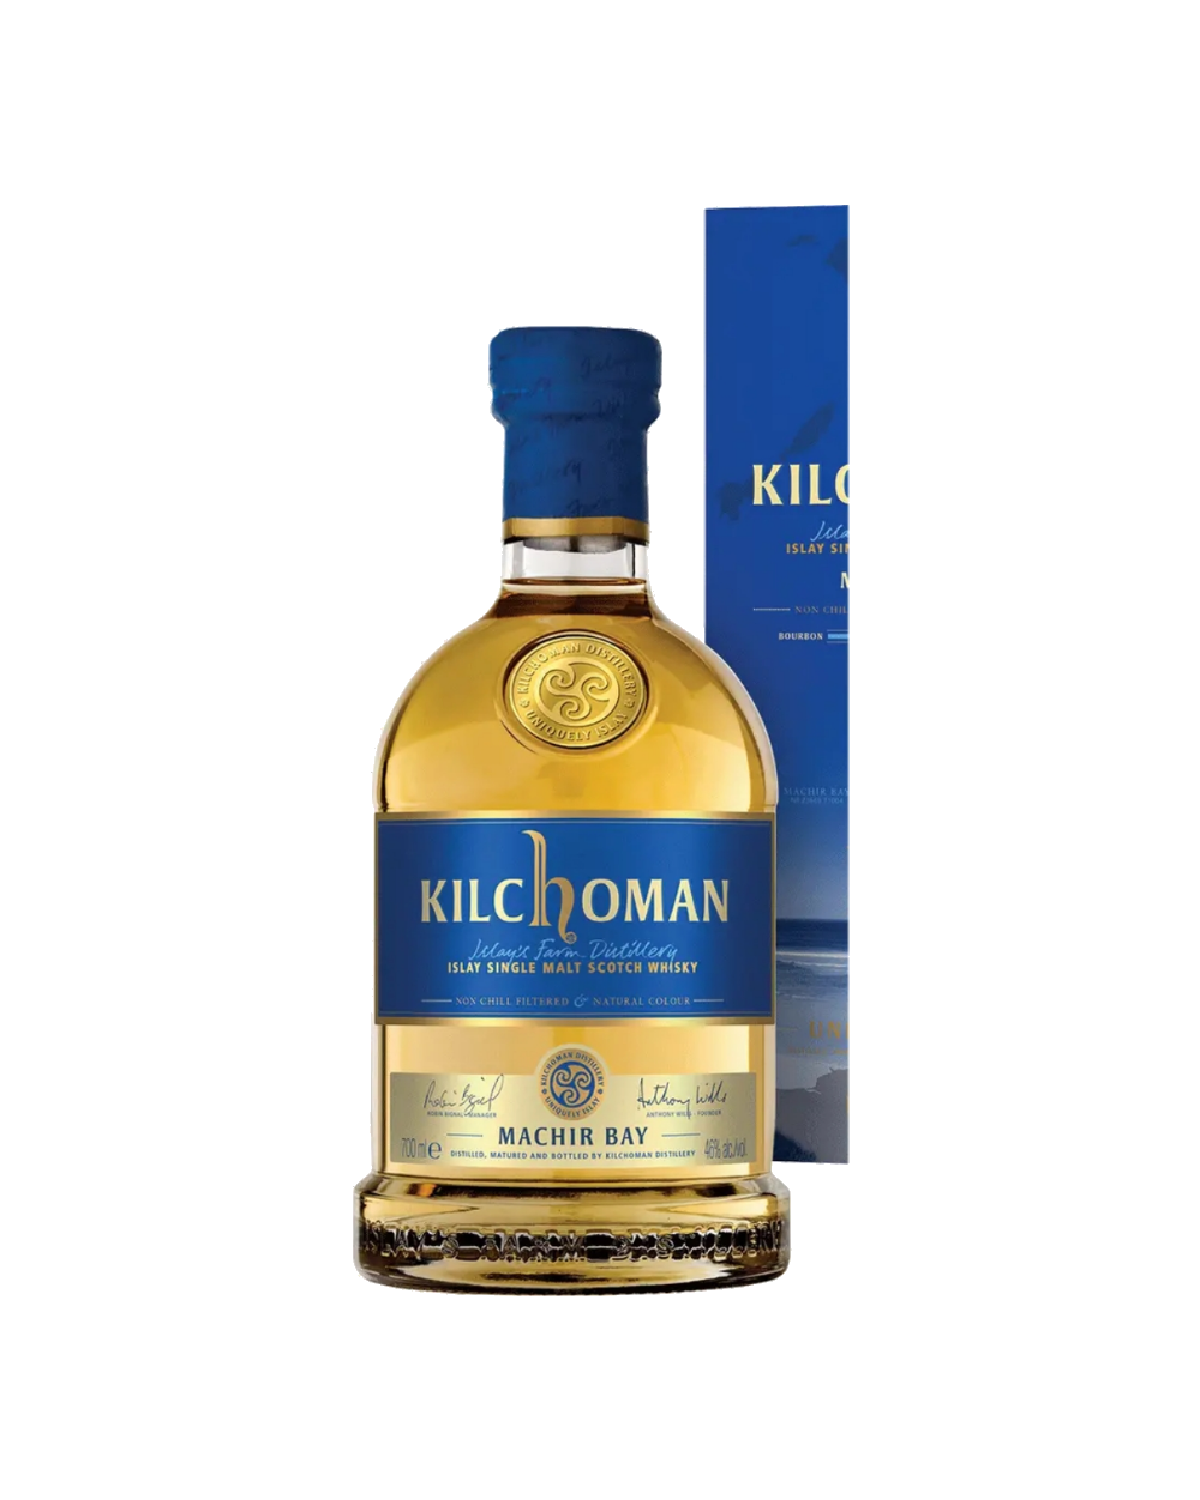 Kilchoman Machir Bay Scotch